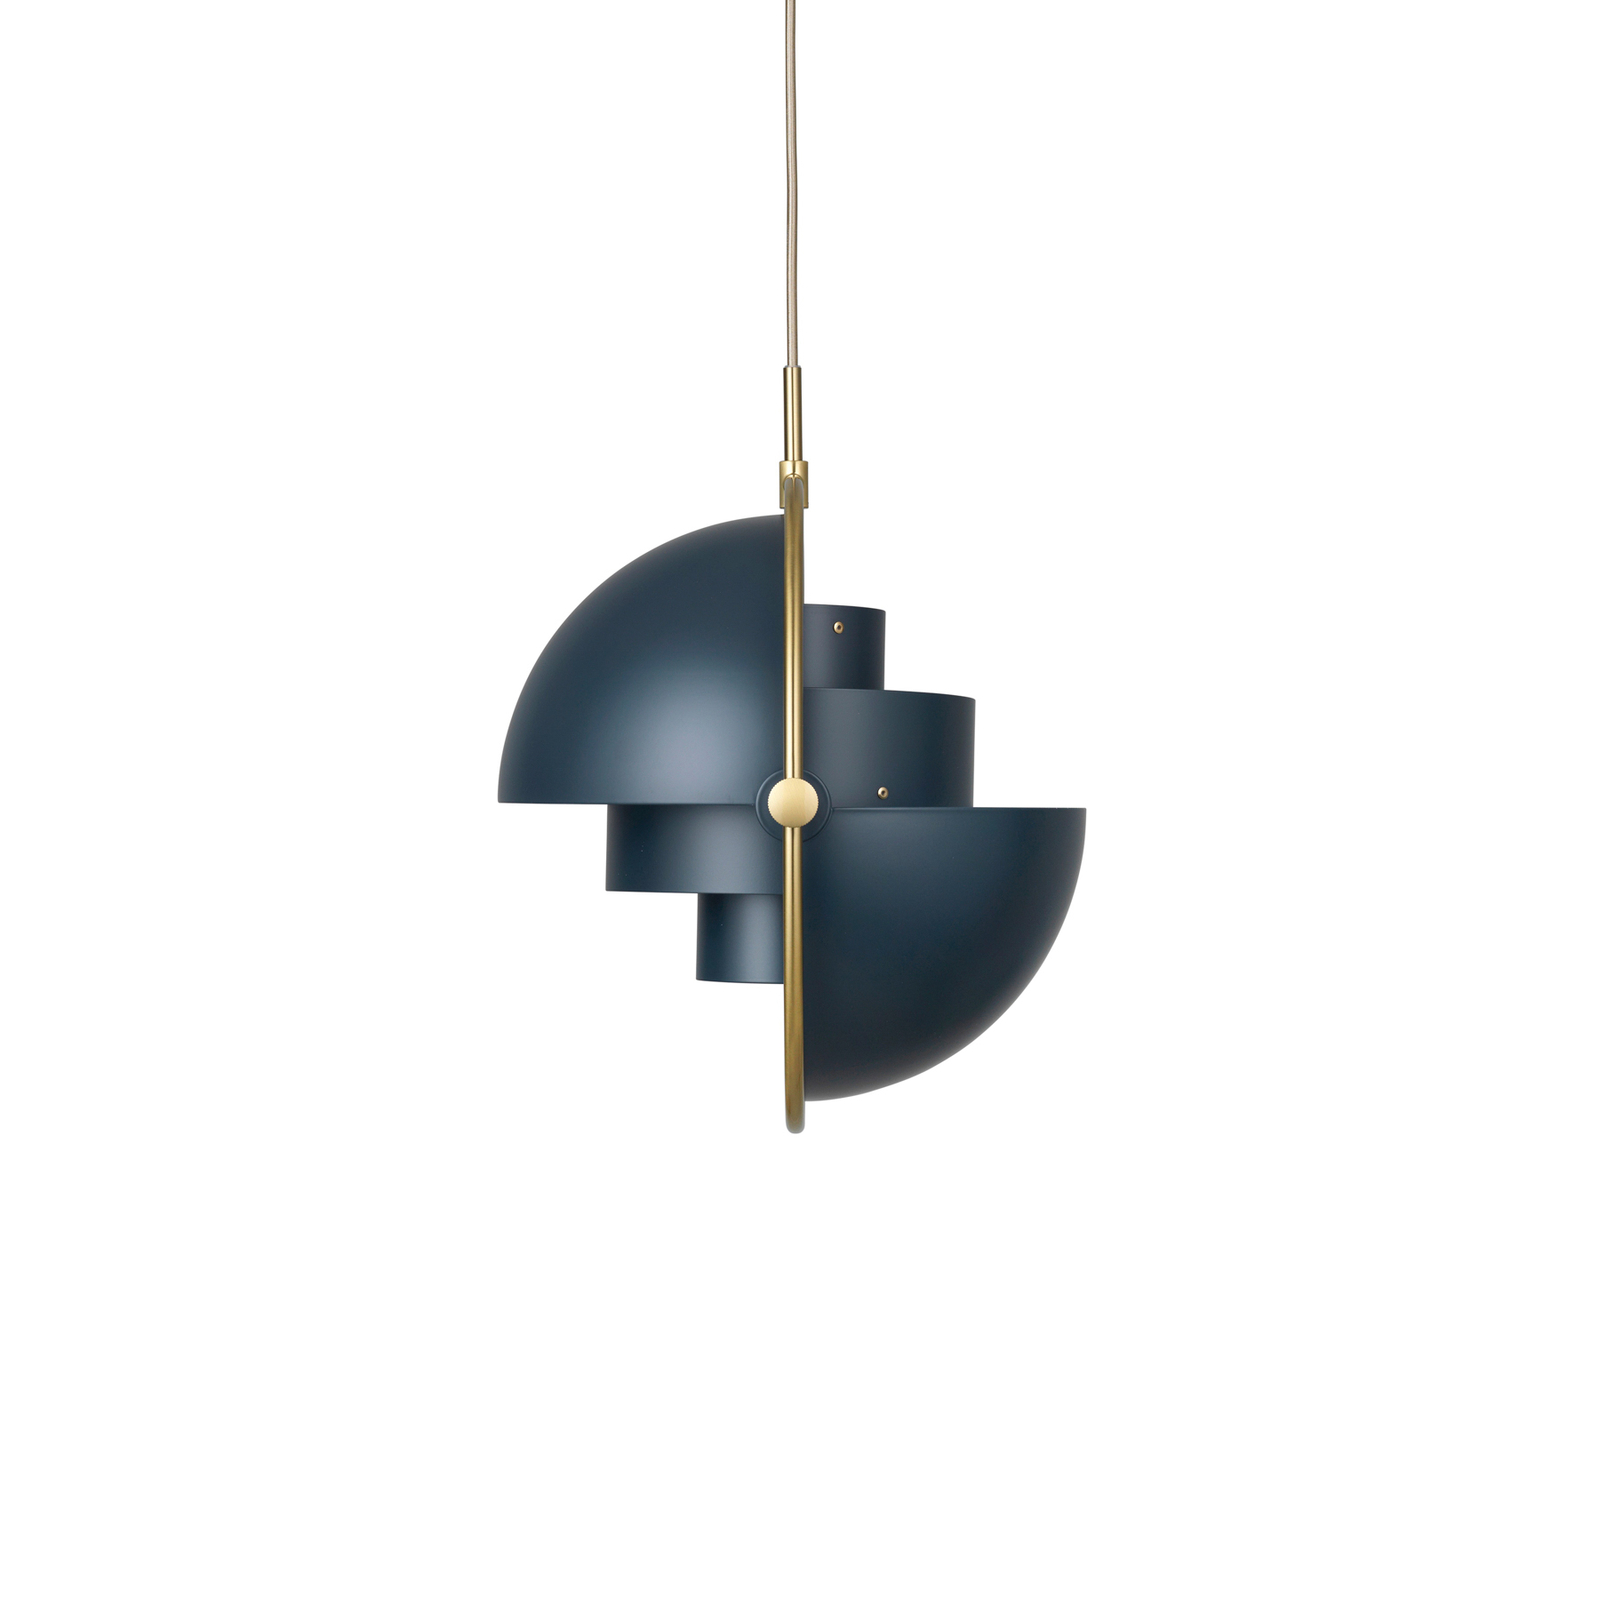 Gubi hanglamp Lite, Ø 36 cm, messing/donkerblauw